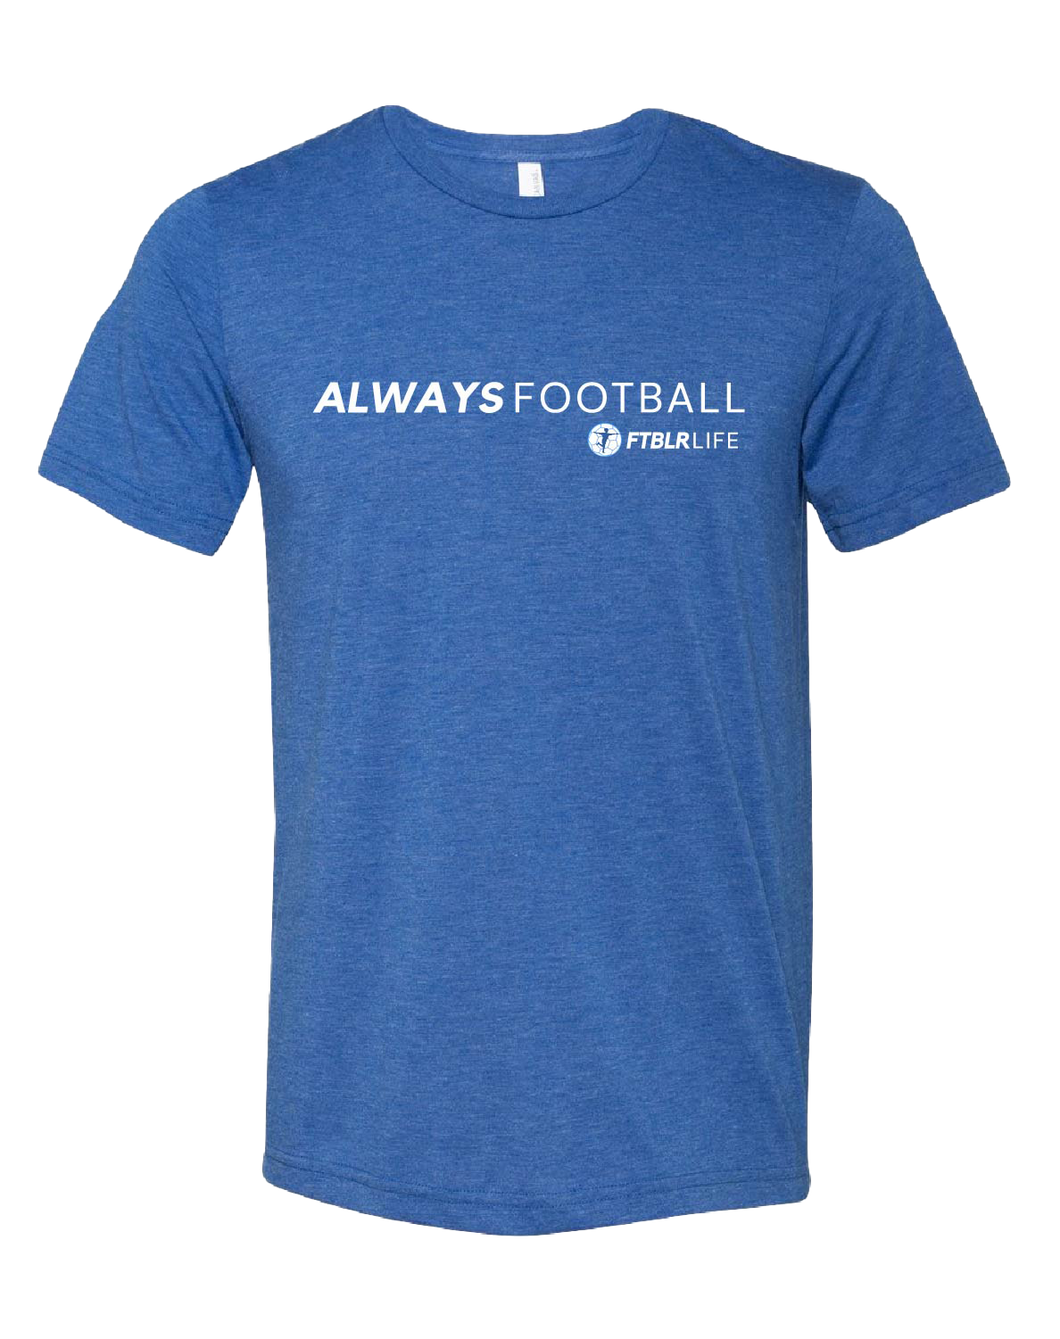 ALWAYS FOOTBALL T-shirt, Blue